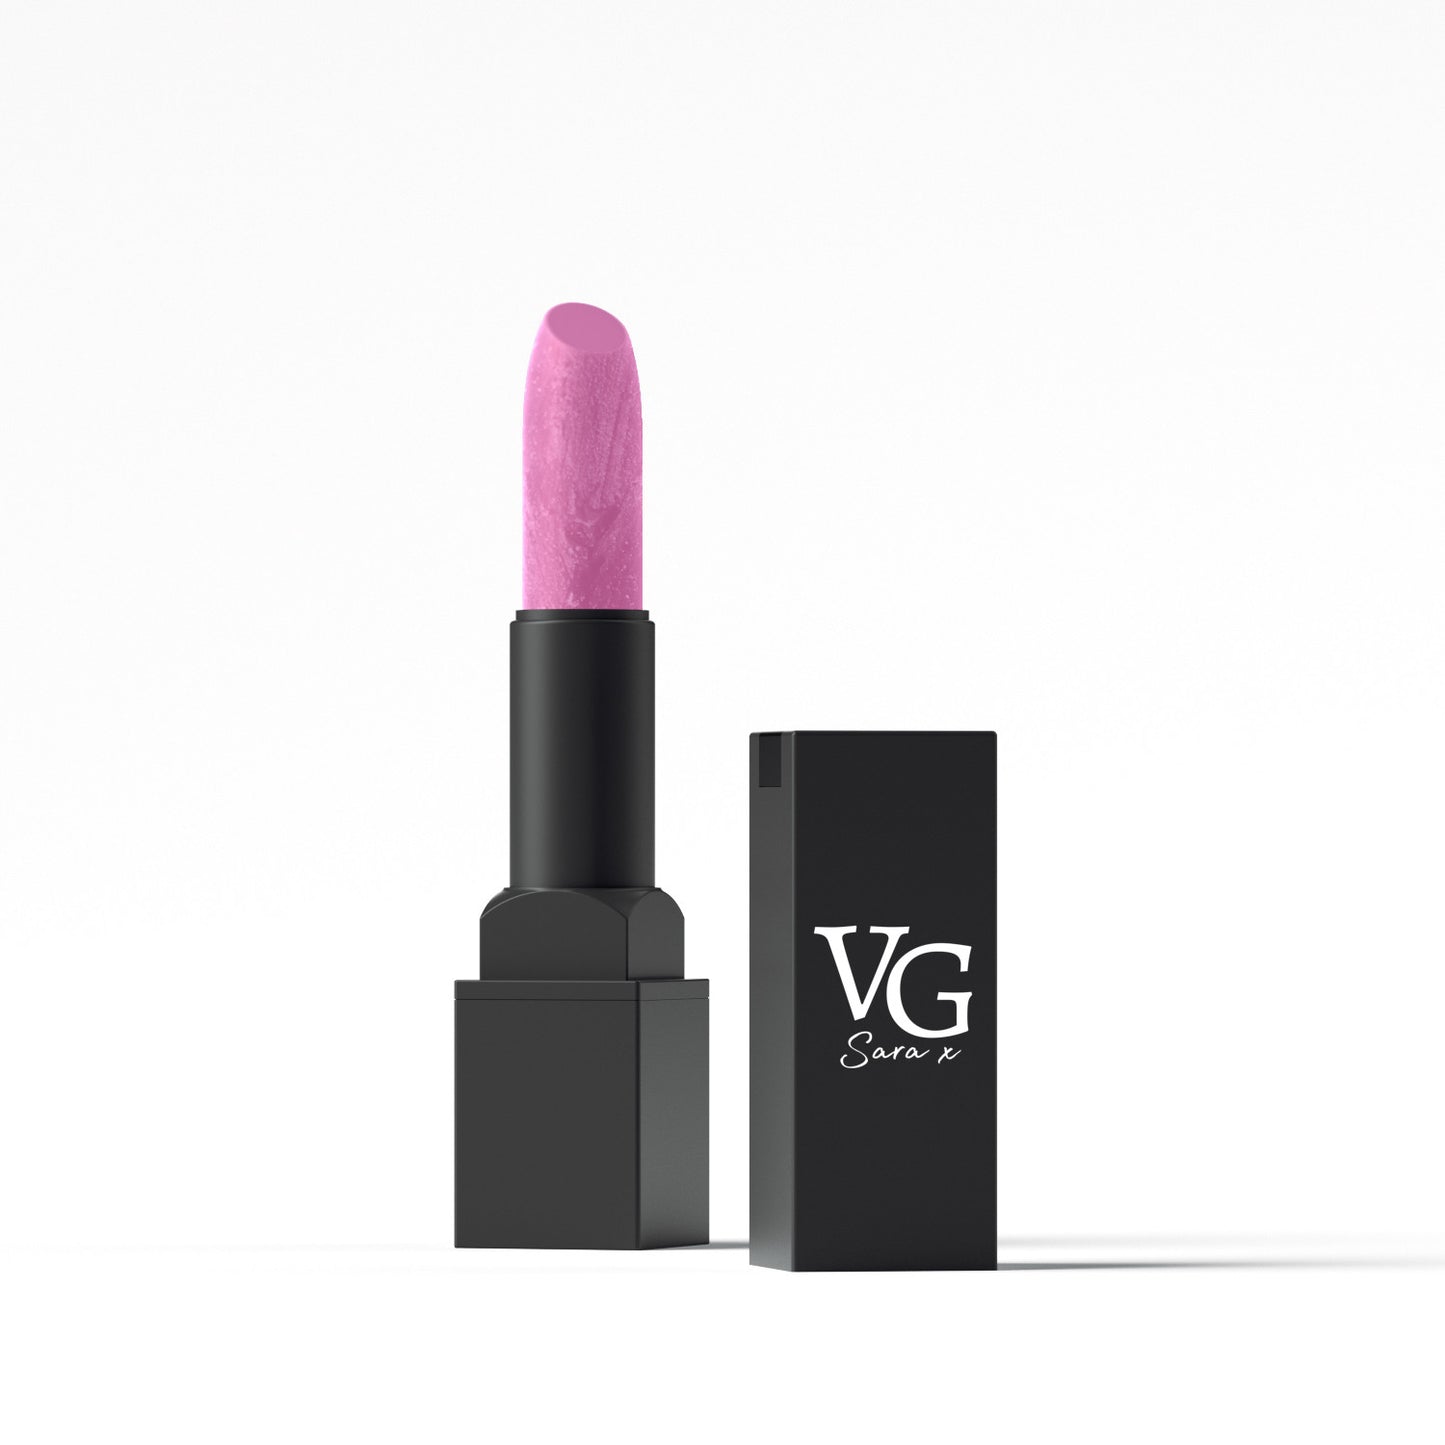 VG lipstick with nourishing Vitamin E component